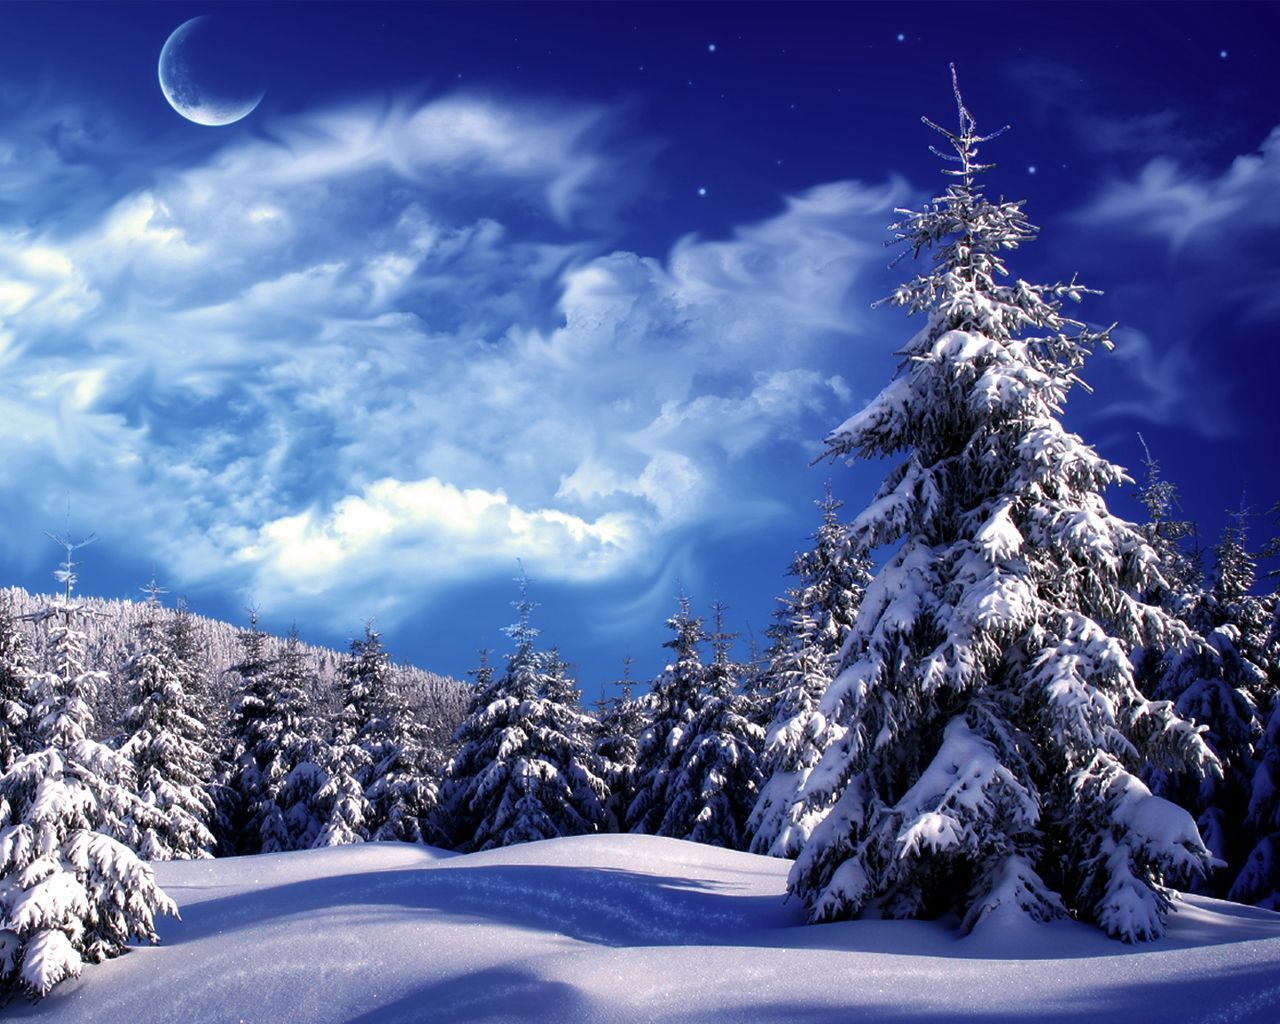 Tron Free Wallpaper: Free Online Wallpaper. Winter scenery, Winter landscape, Winter picture